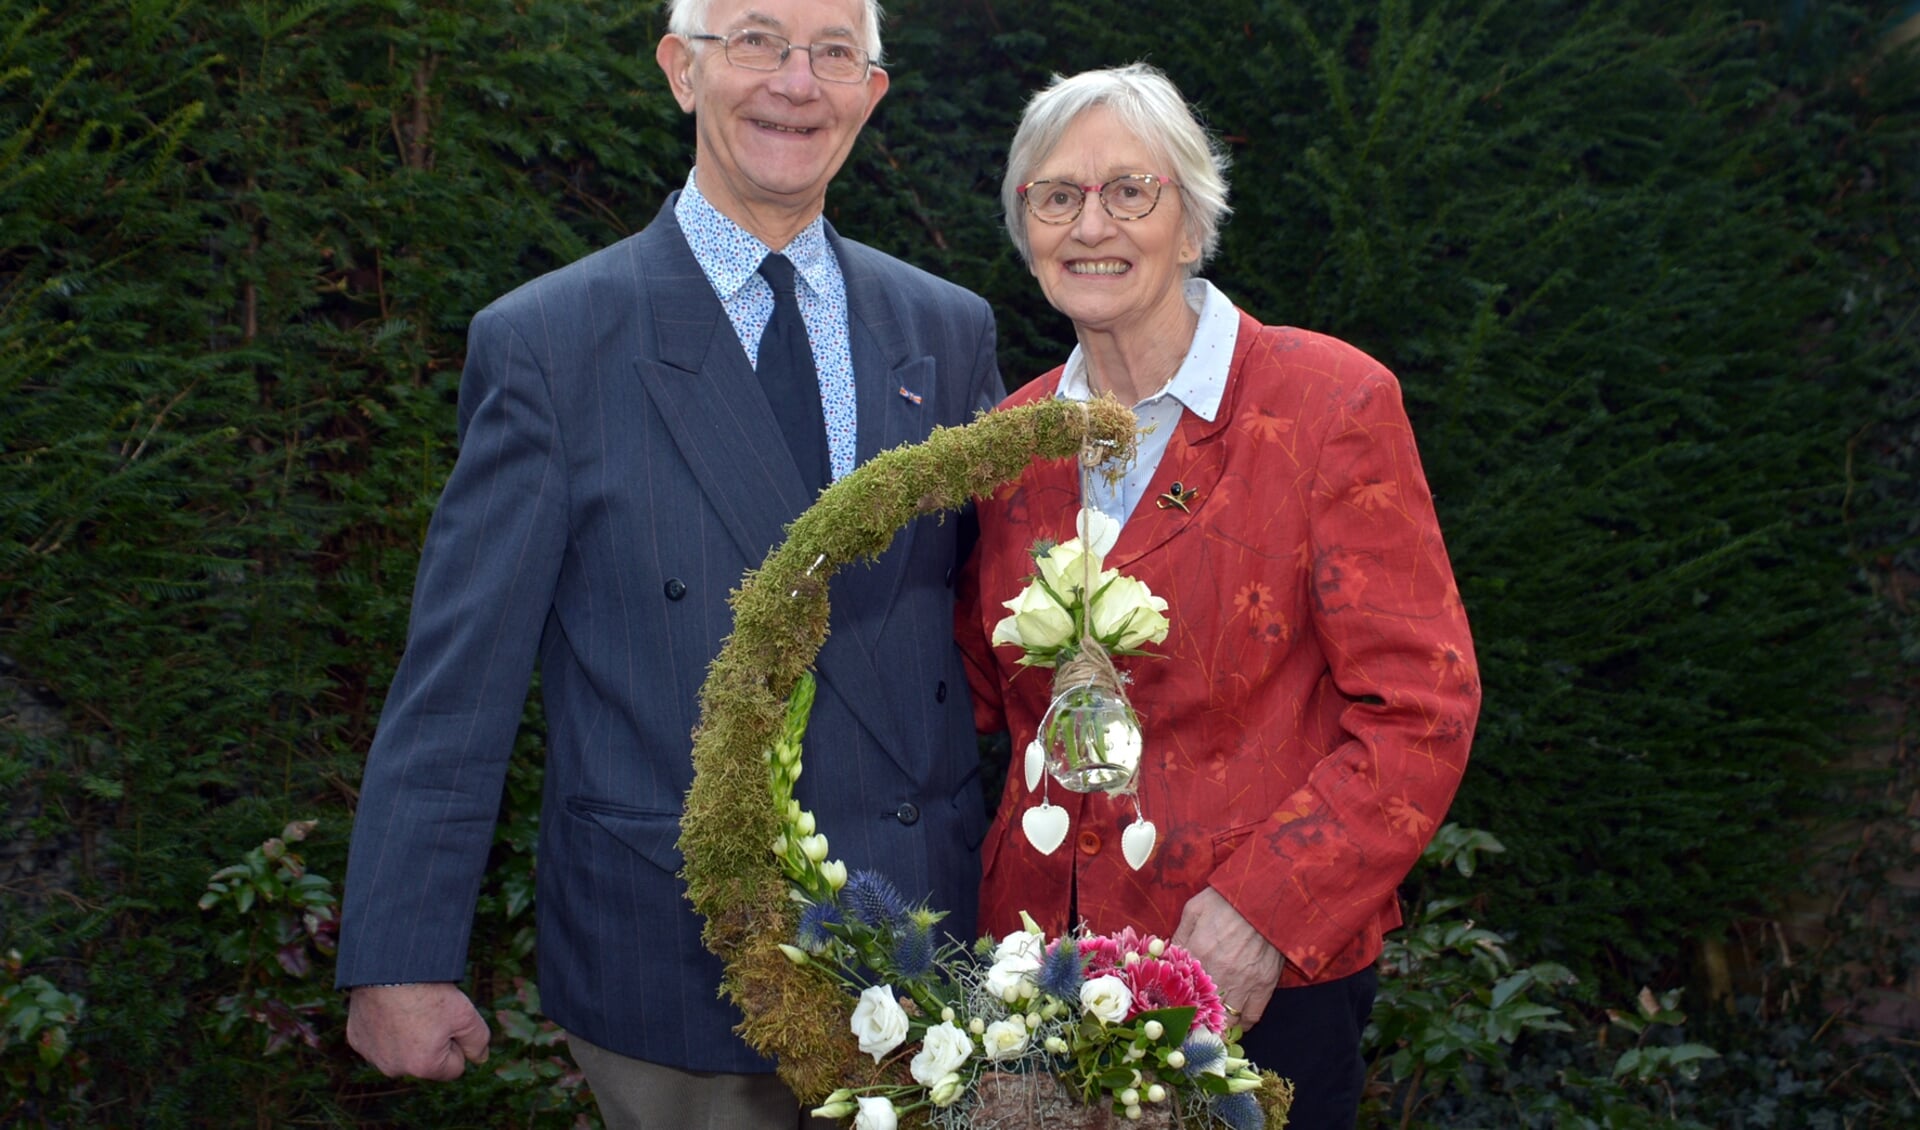 Richard en Antoinette, al 50 jaar gelukkig met elkaar. (foto: Henk Lunenburg)